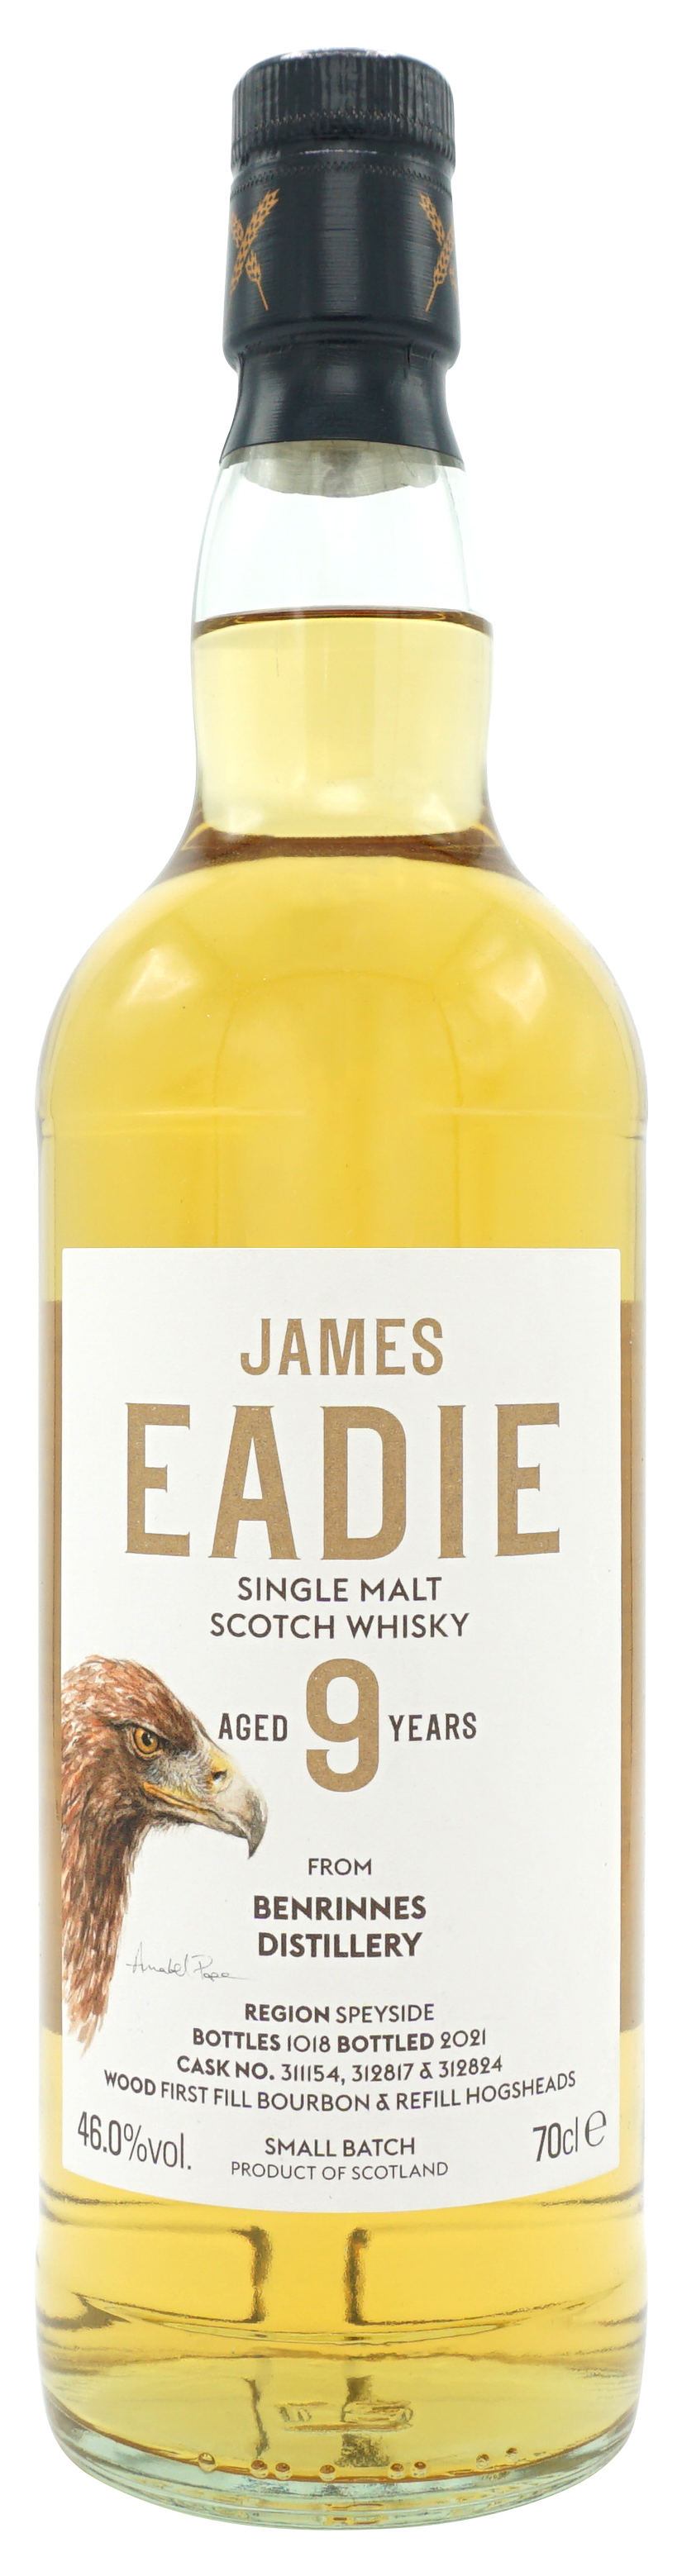 James Eadie Benrinnes 9 Years Single Malt 70cl 46